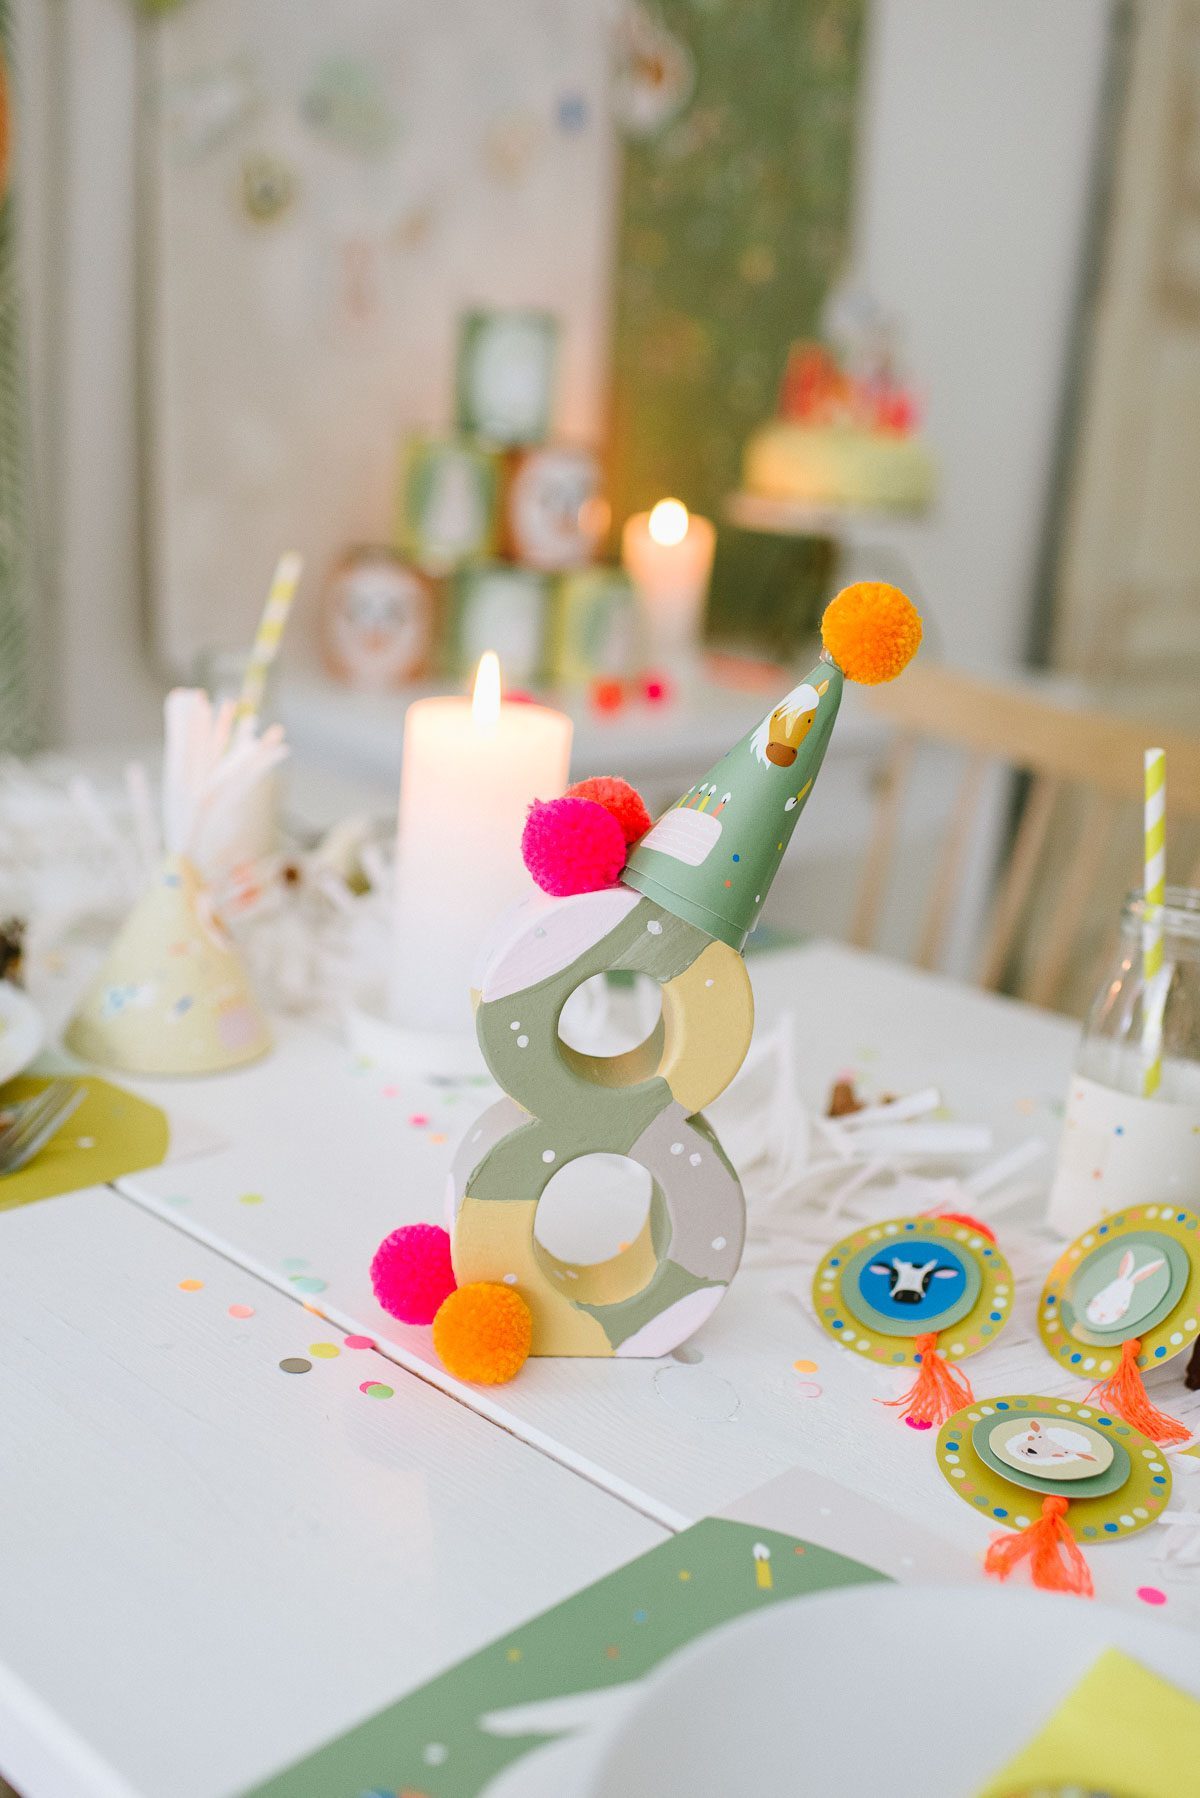 Geburtstagszahl gestalten: Einfache DIY Deko zum Kindergeburtstag selber machen und fröhliche Geburtstagsfeier erleben. Super schnell & easy!